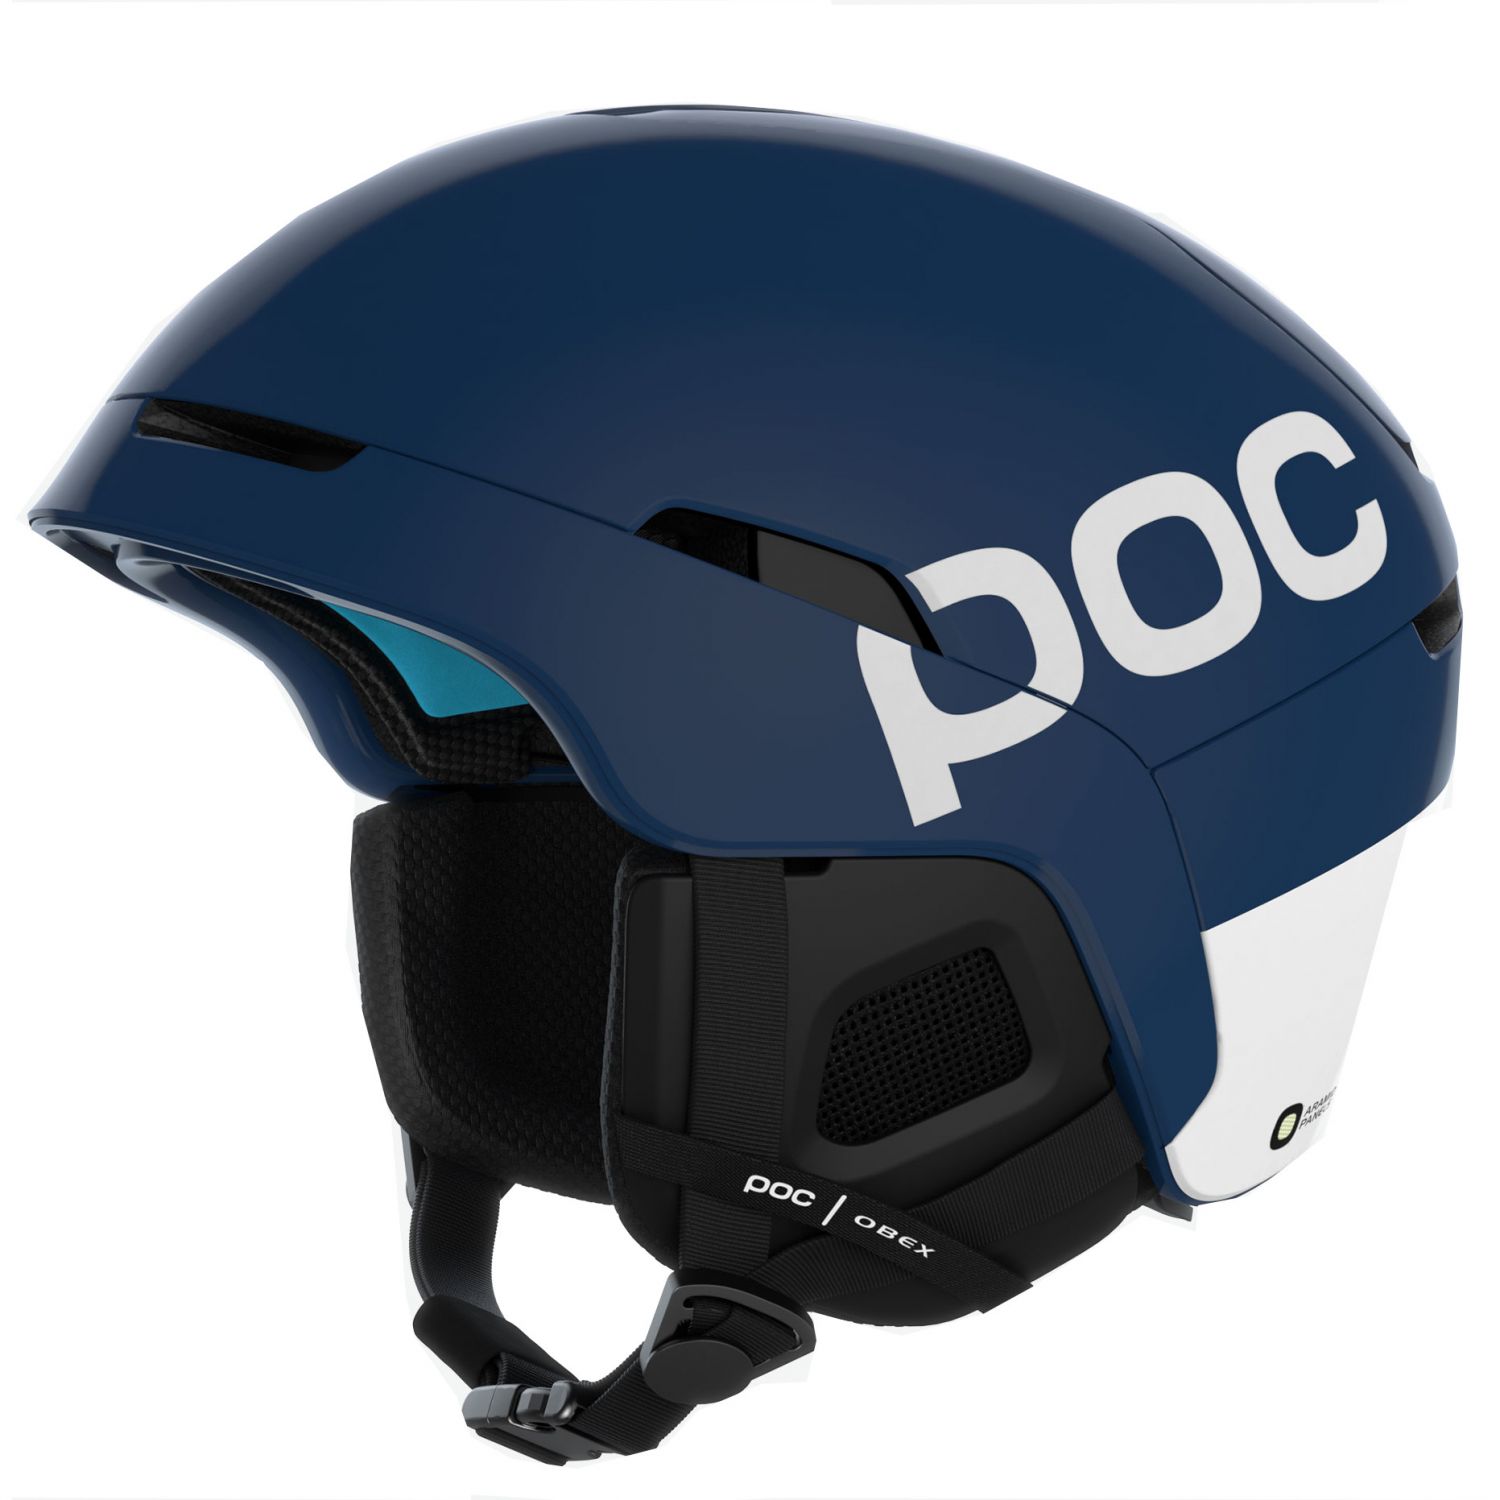 Brug POC Obex Backcountry Spin, skihjelm, blå til en forbedret oplevelse